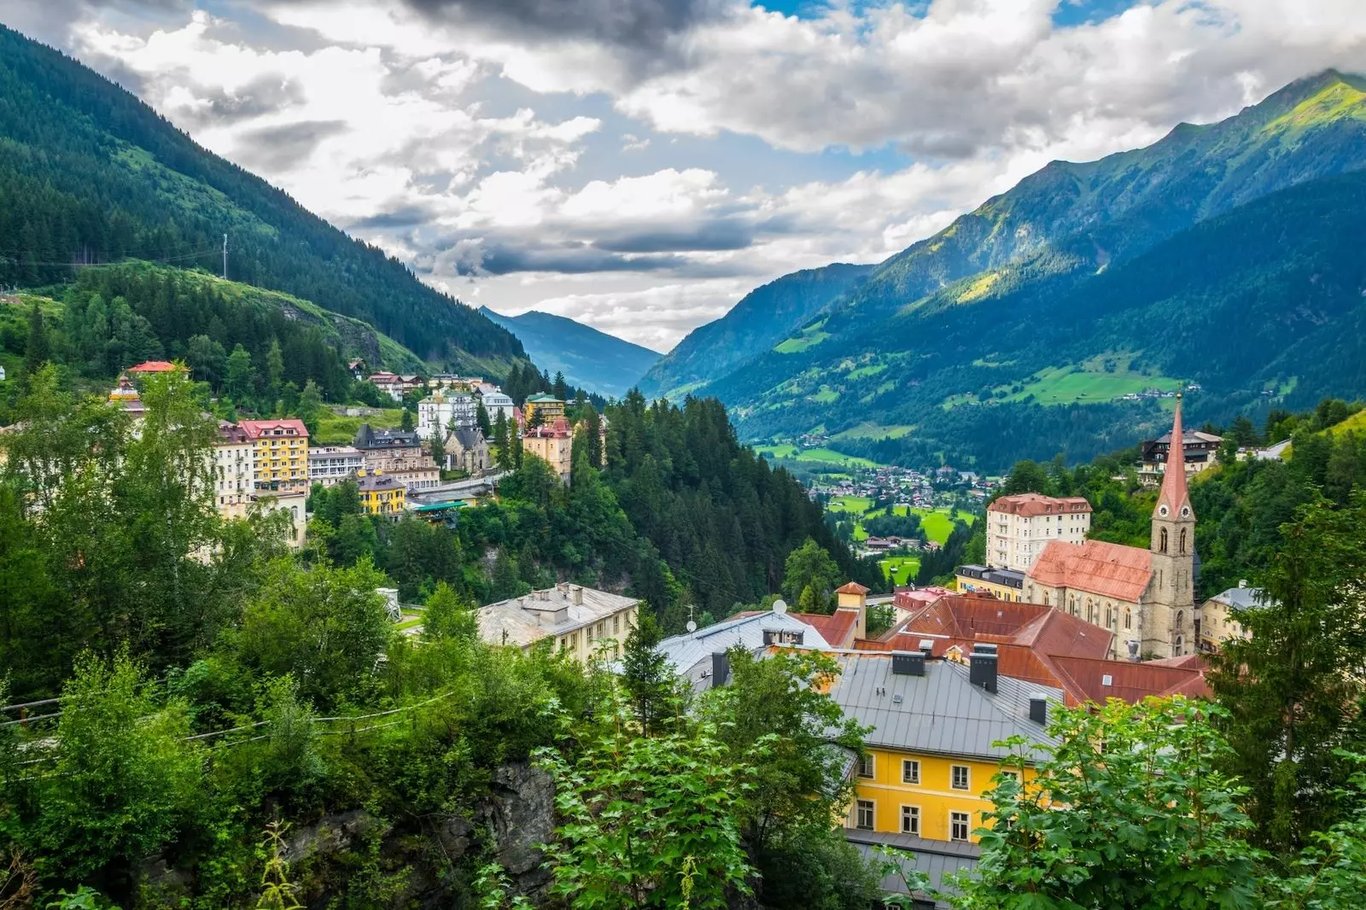 Bad Gastein, Austria - Top 3 Attractions